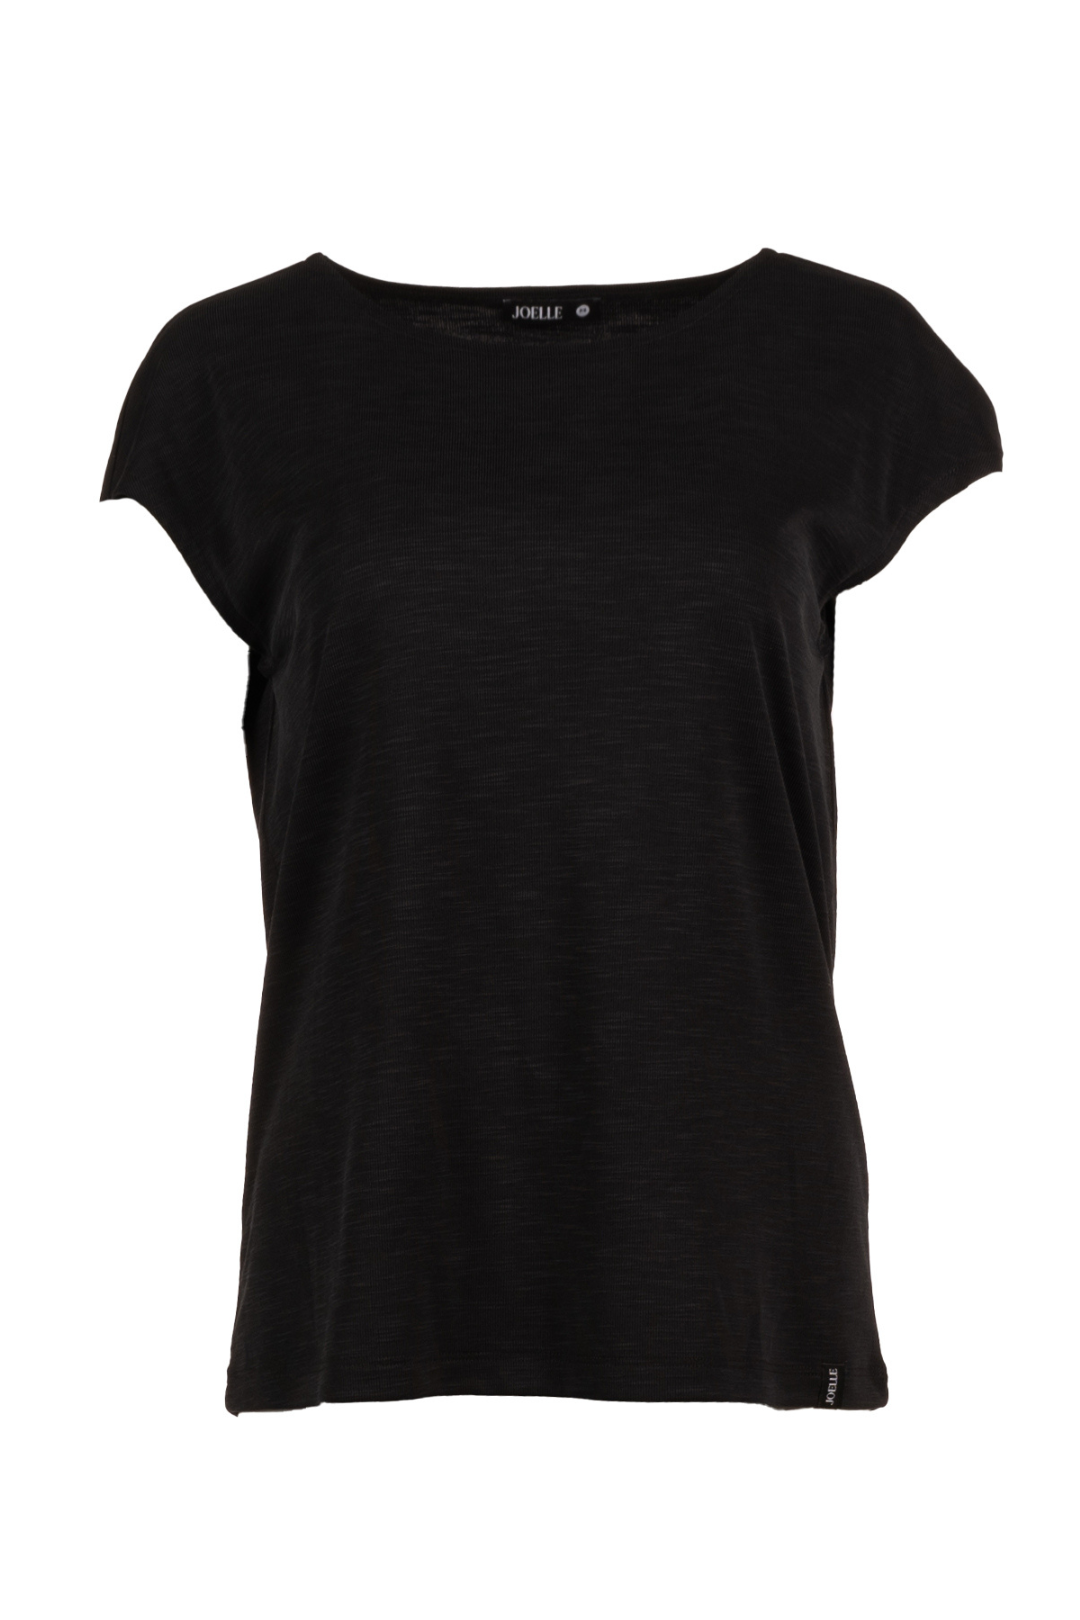 T-shirt noir à mancherons | Waverly